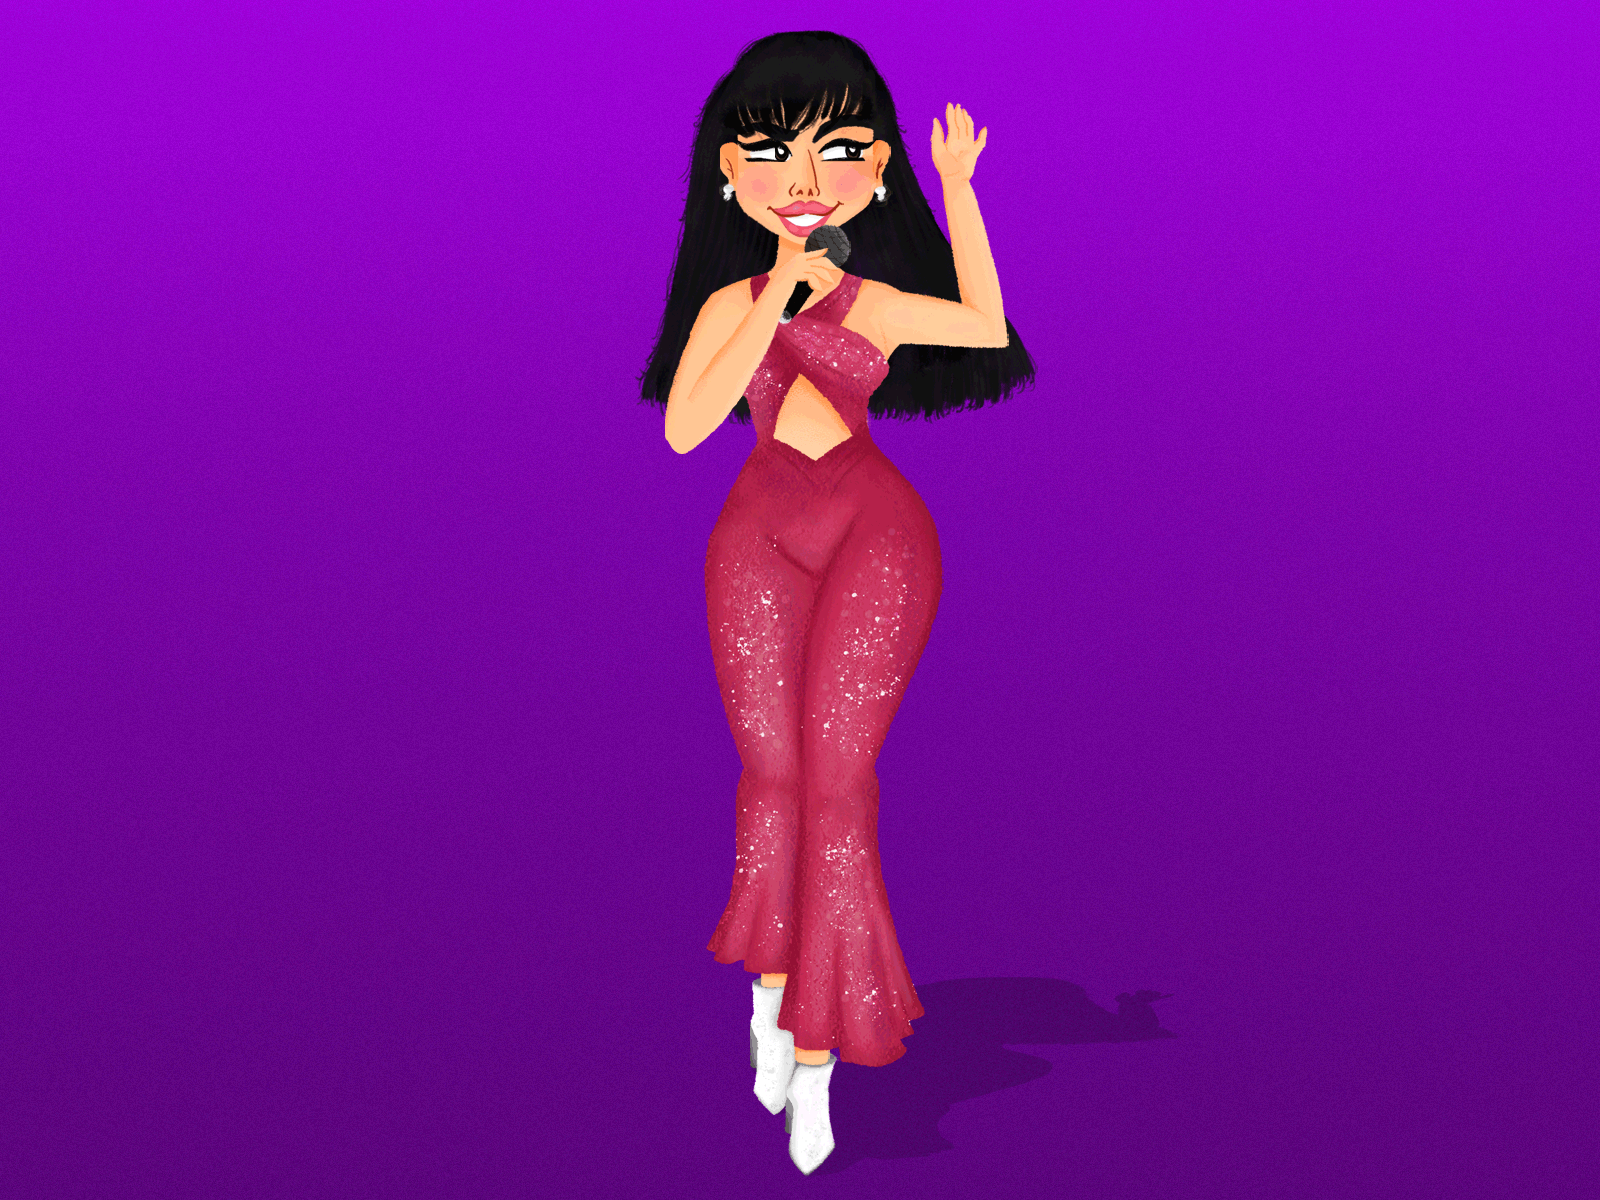 Selena Quintanilla singer brush character design illustration music singer social media tex mex